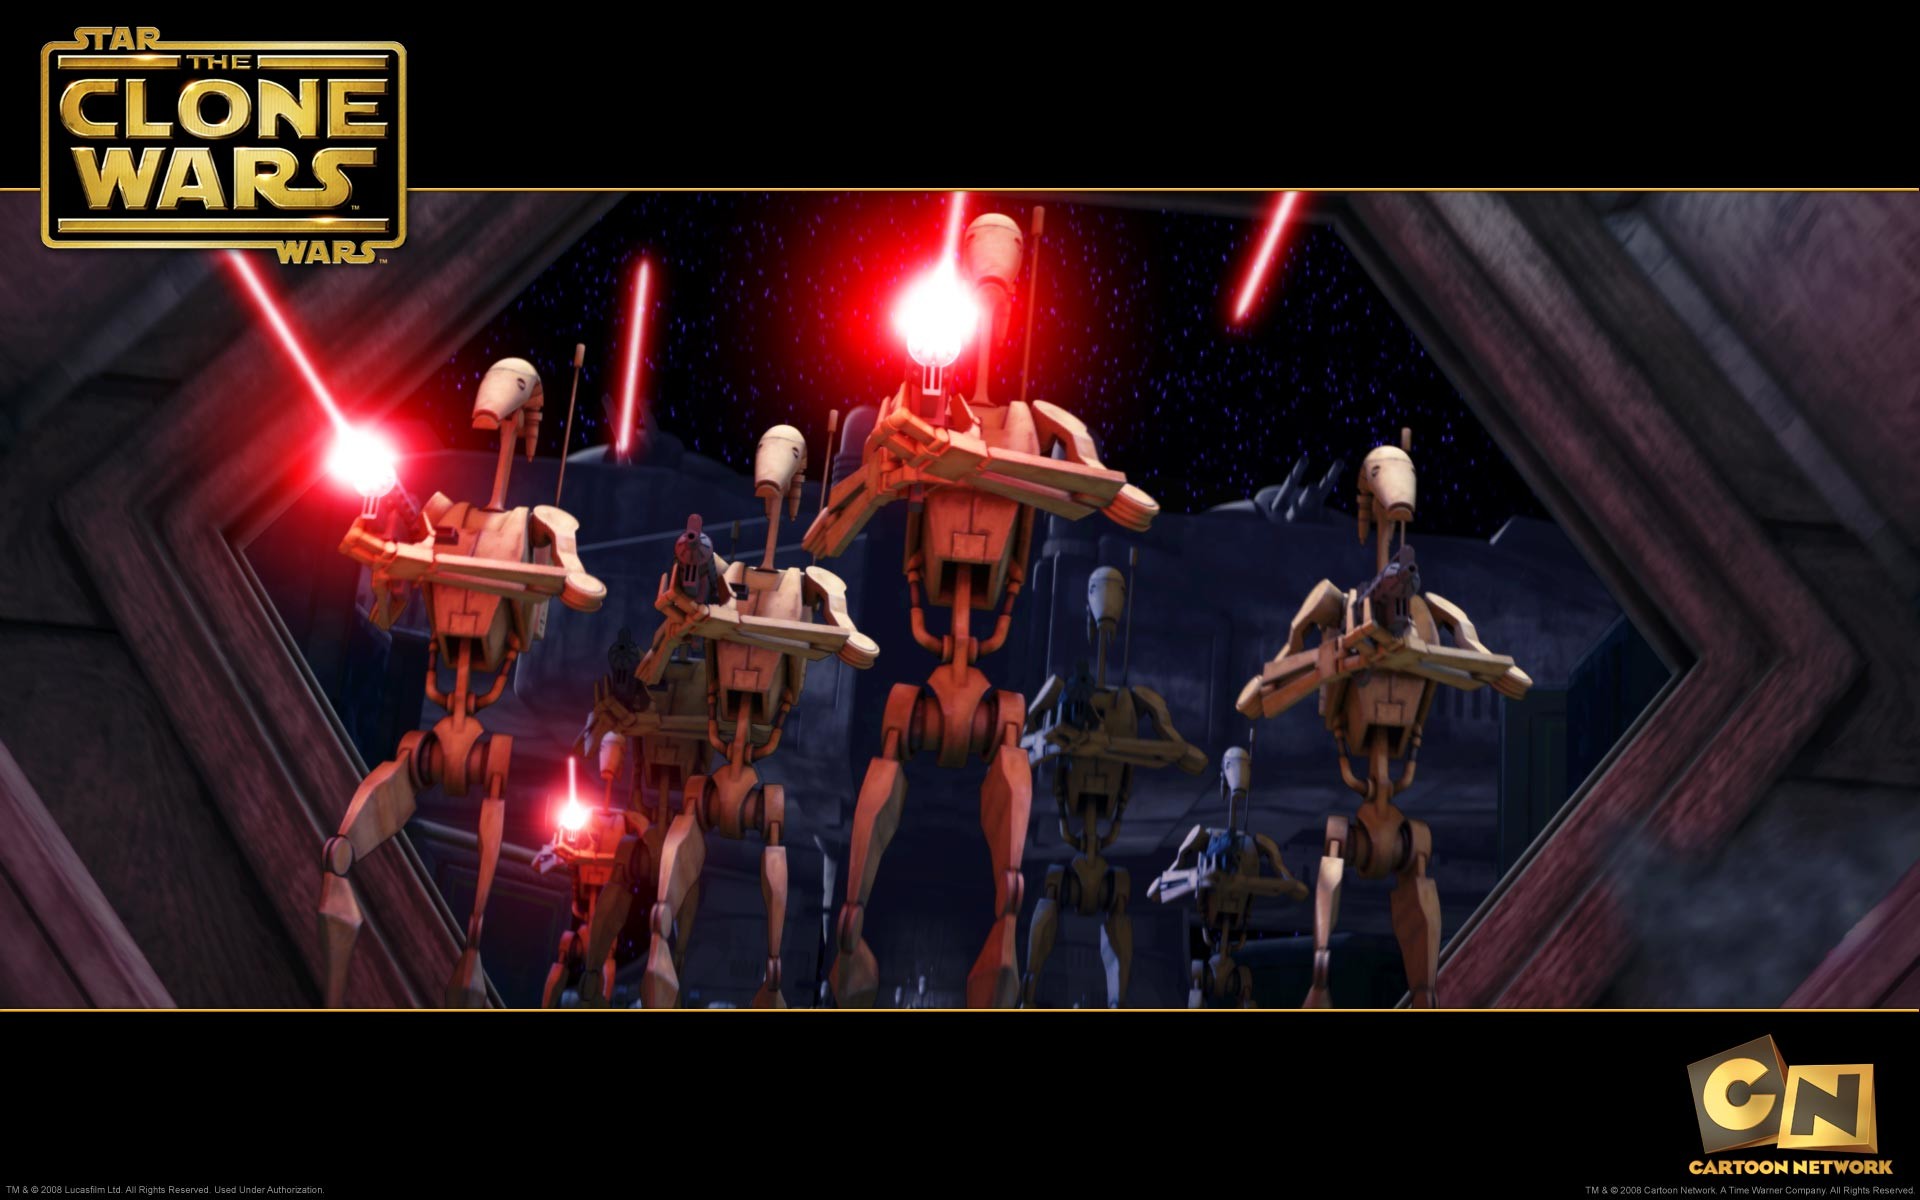 1920x1200 wallpaper picture of a group of battle droids firing their guns